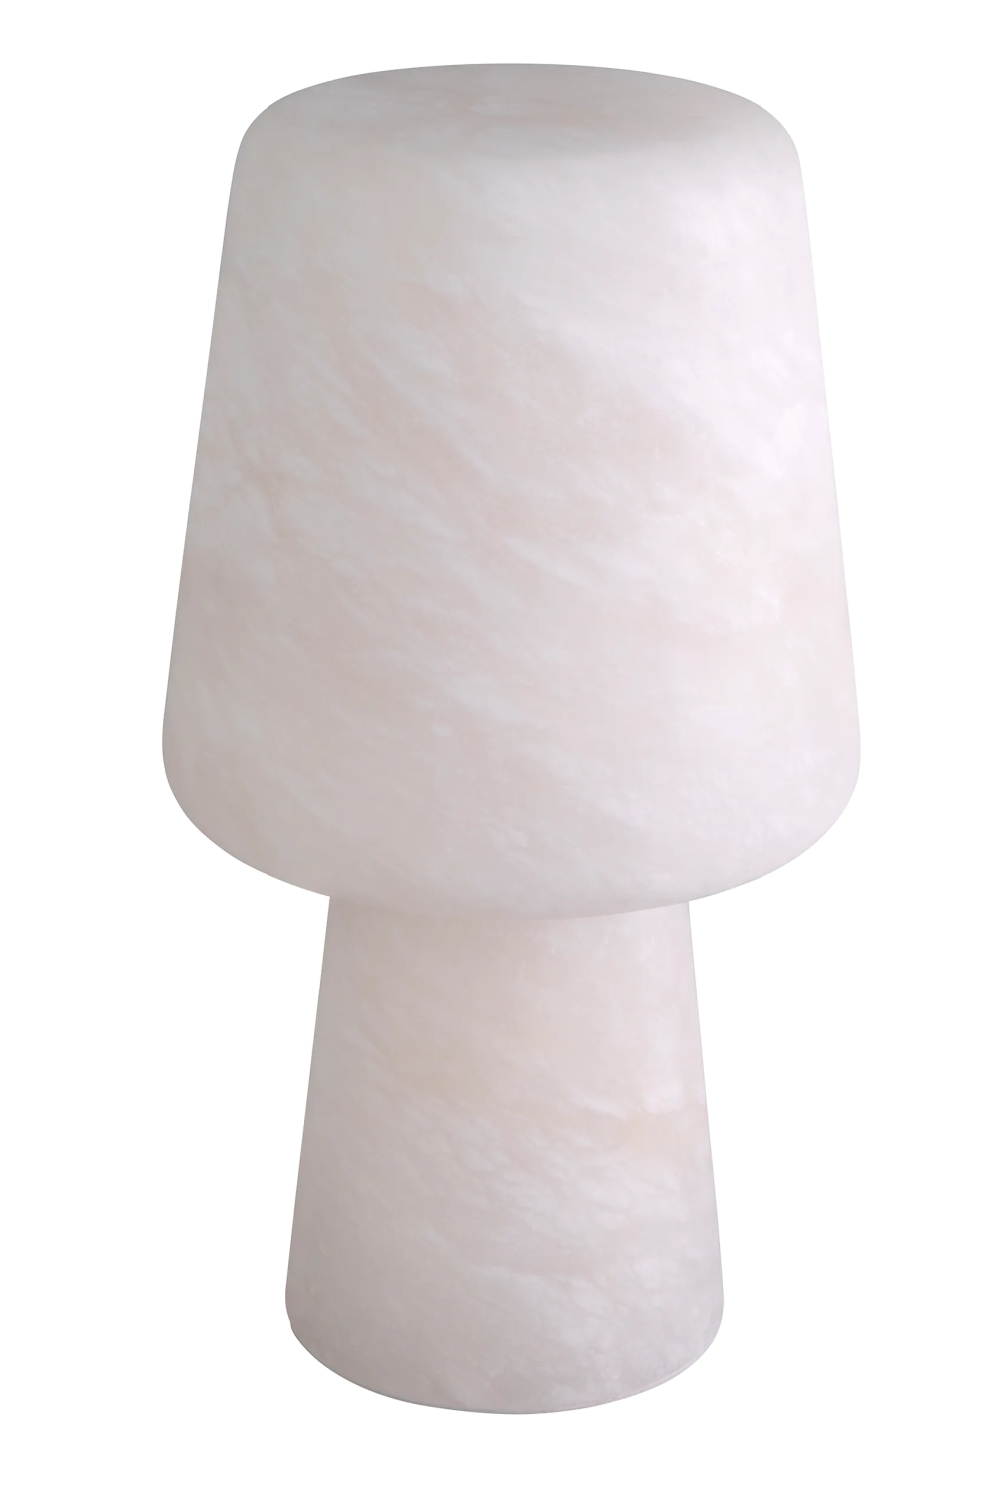 White Alabaster Table Lamp | Eichholtz Melia | Oroa.com